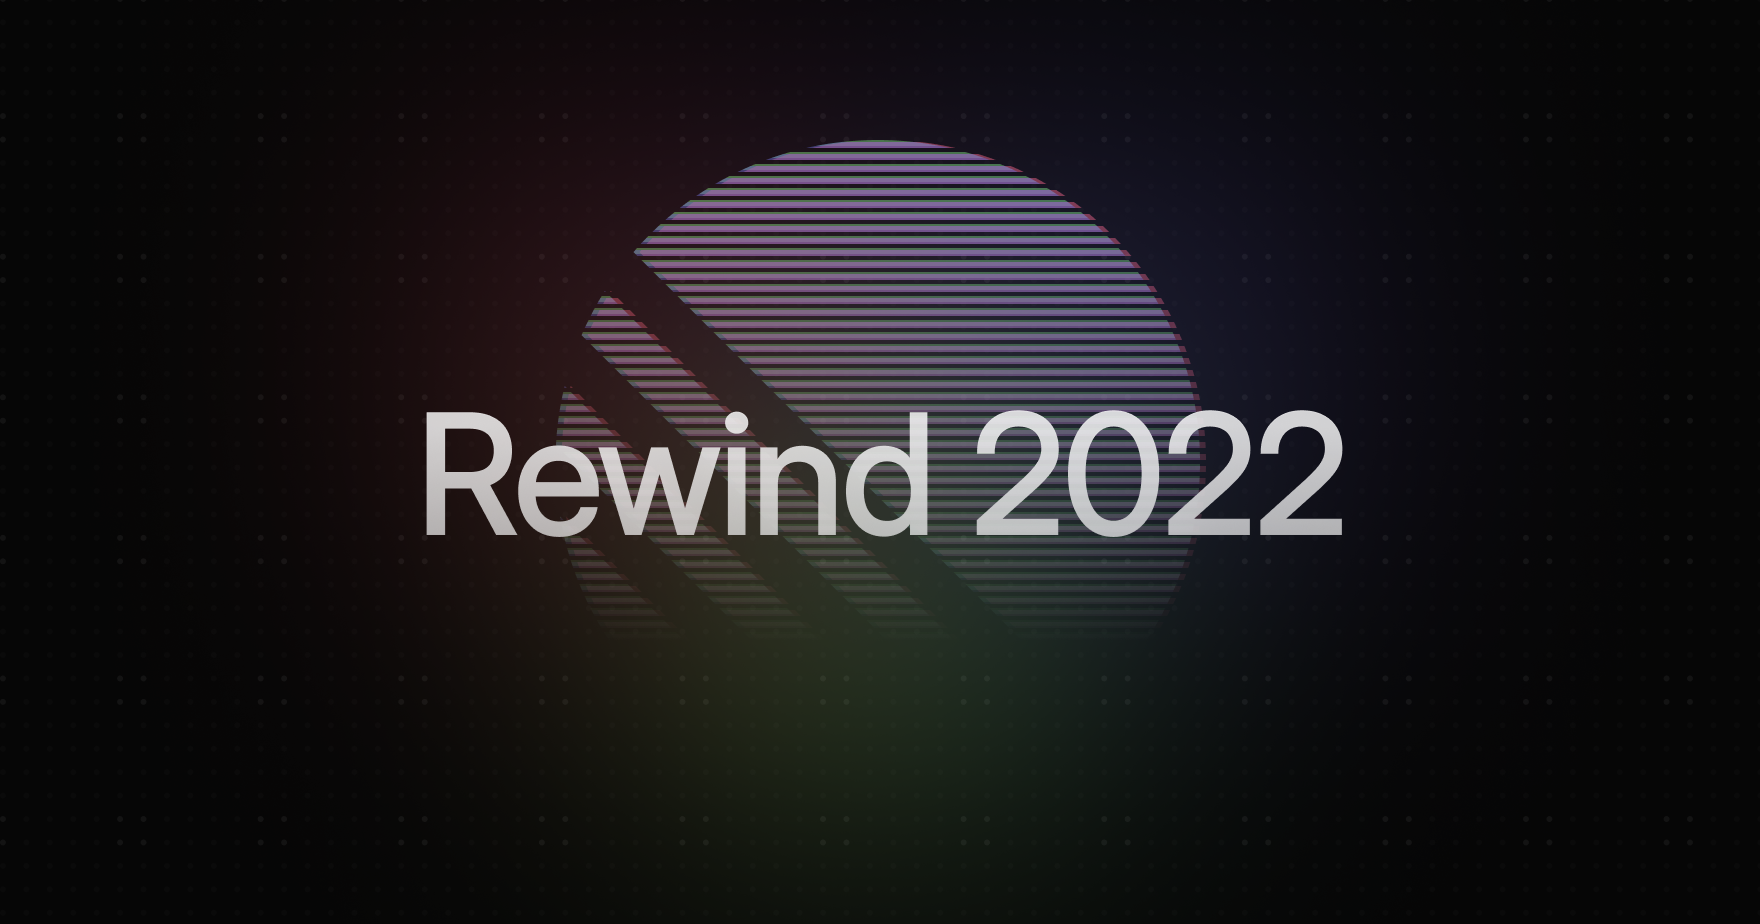 2022, Rewind